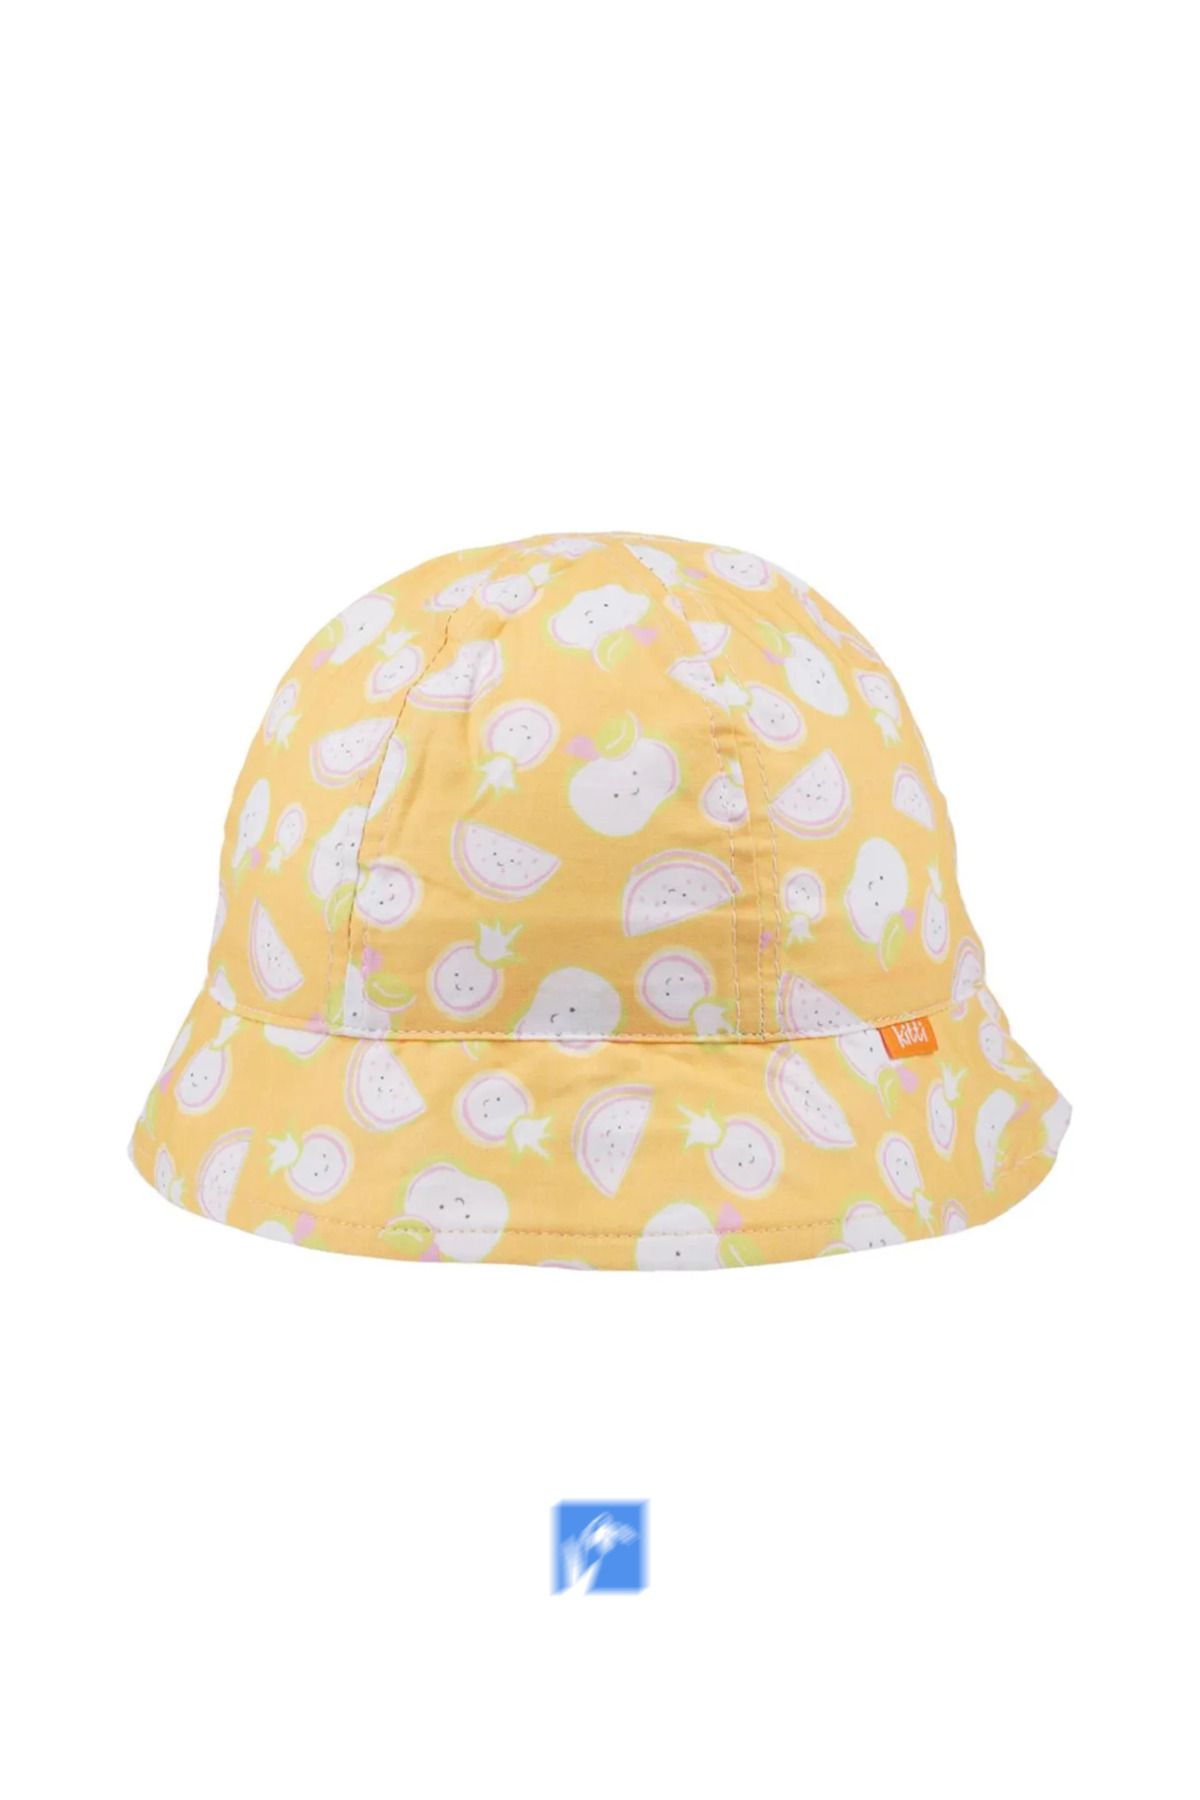 Kardelen Butik Denizli %100 Pamuk  Kız Çocuklar İçin Güneş Şapkası  ( 4-8 Yaş ) ( Size 52 )